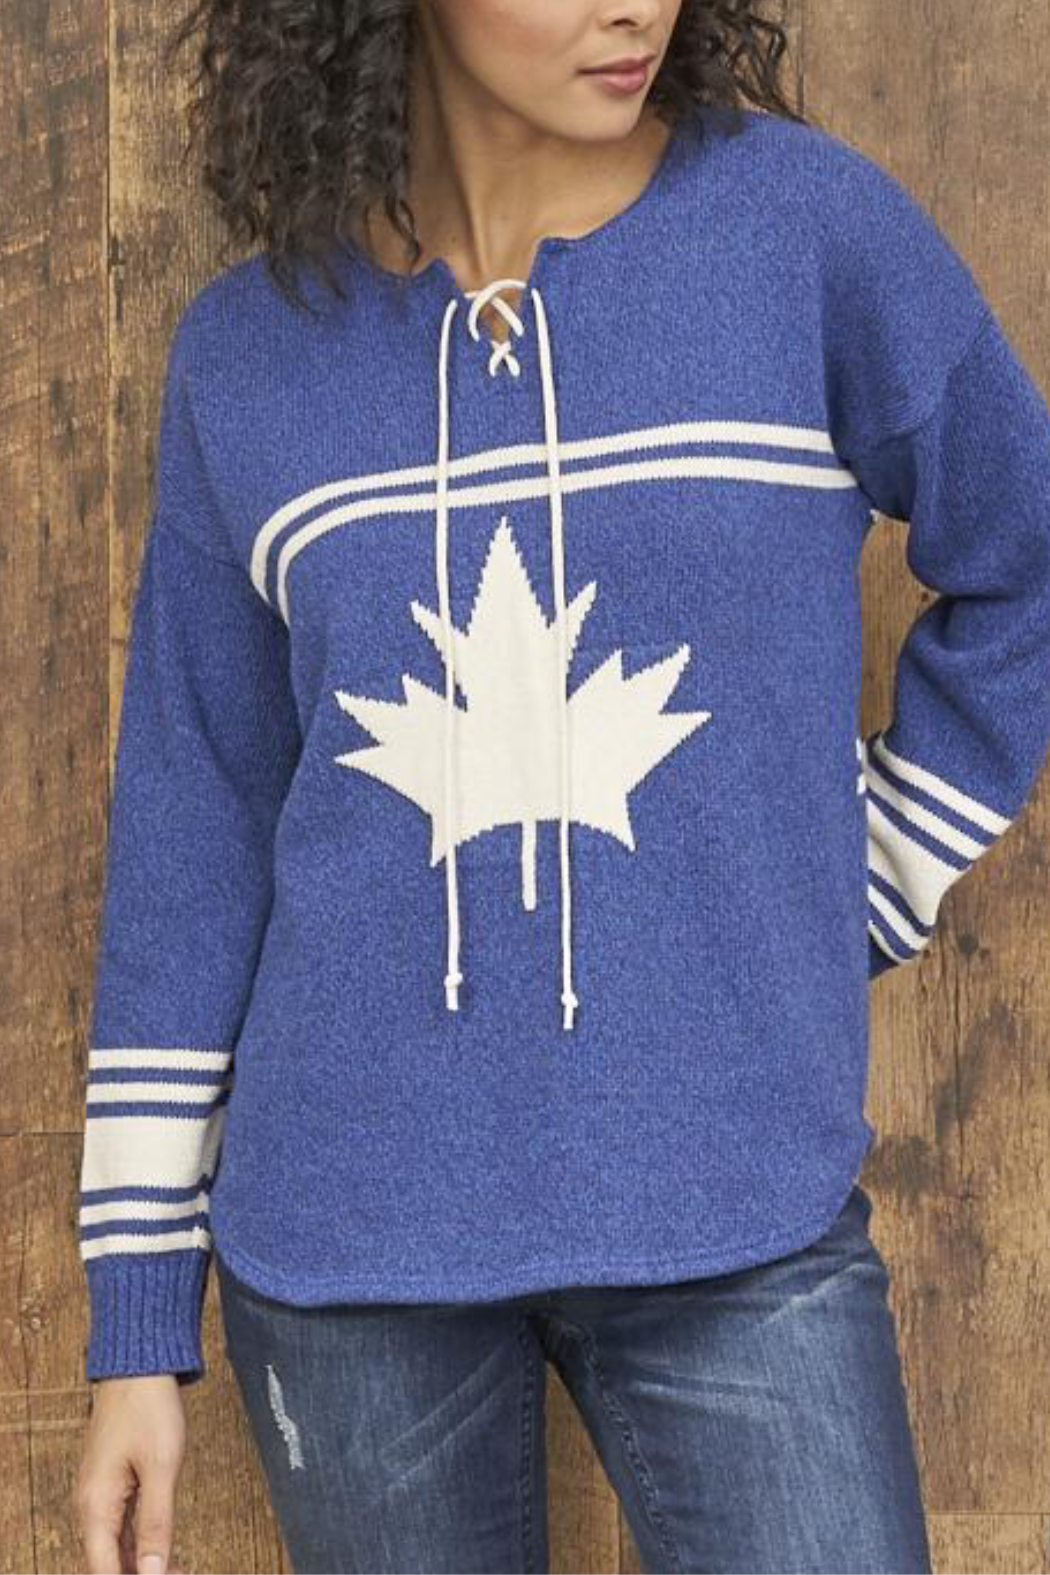 Canada Hockey Sweater